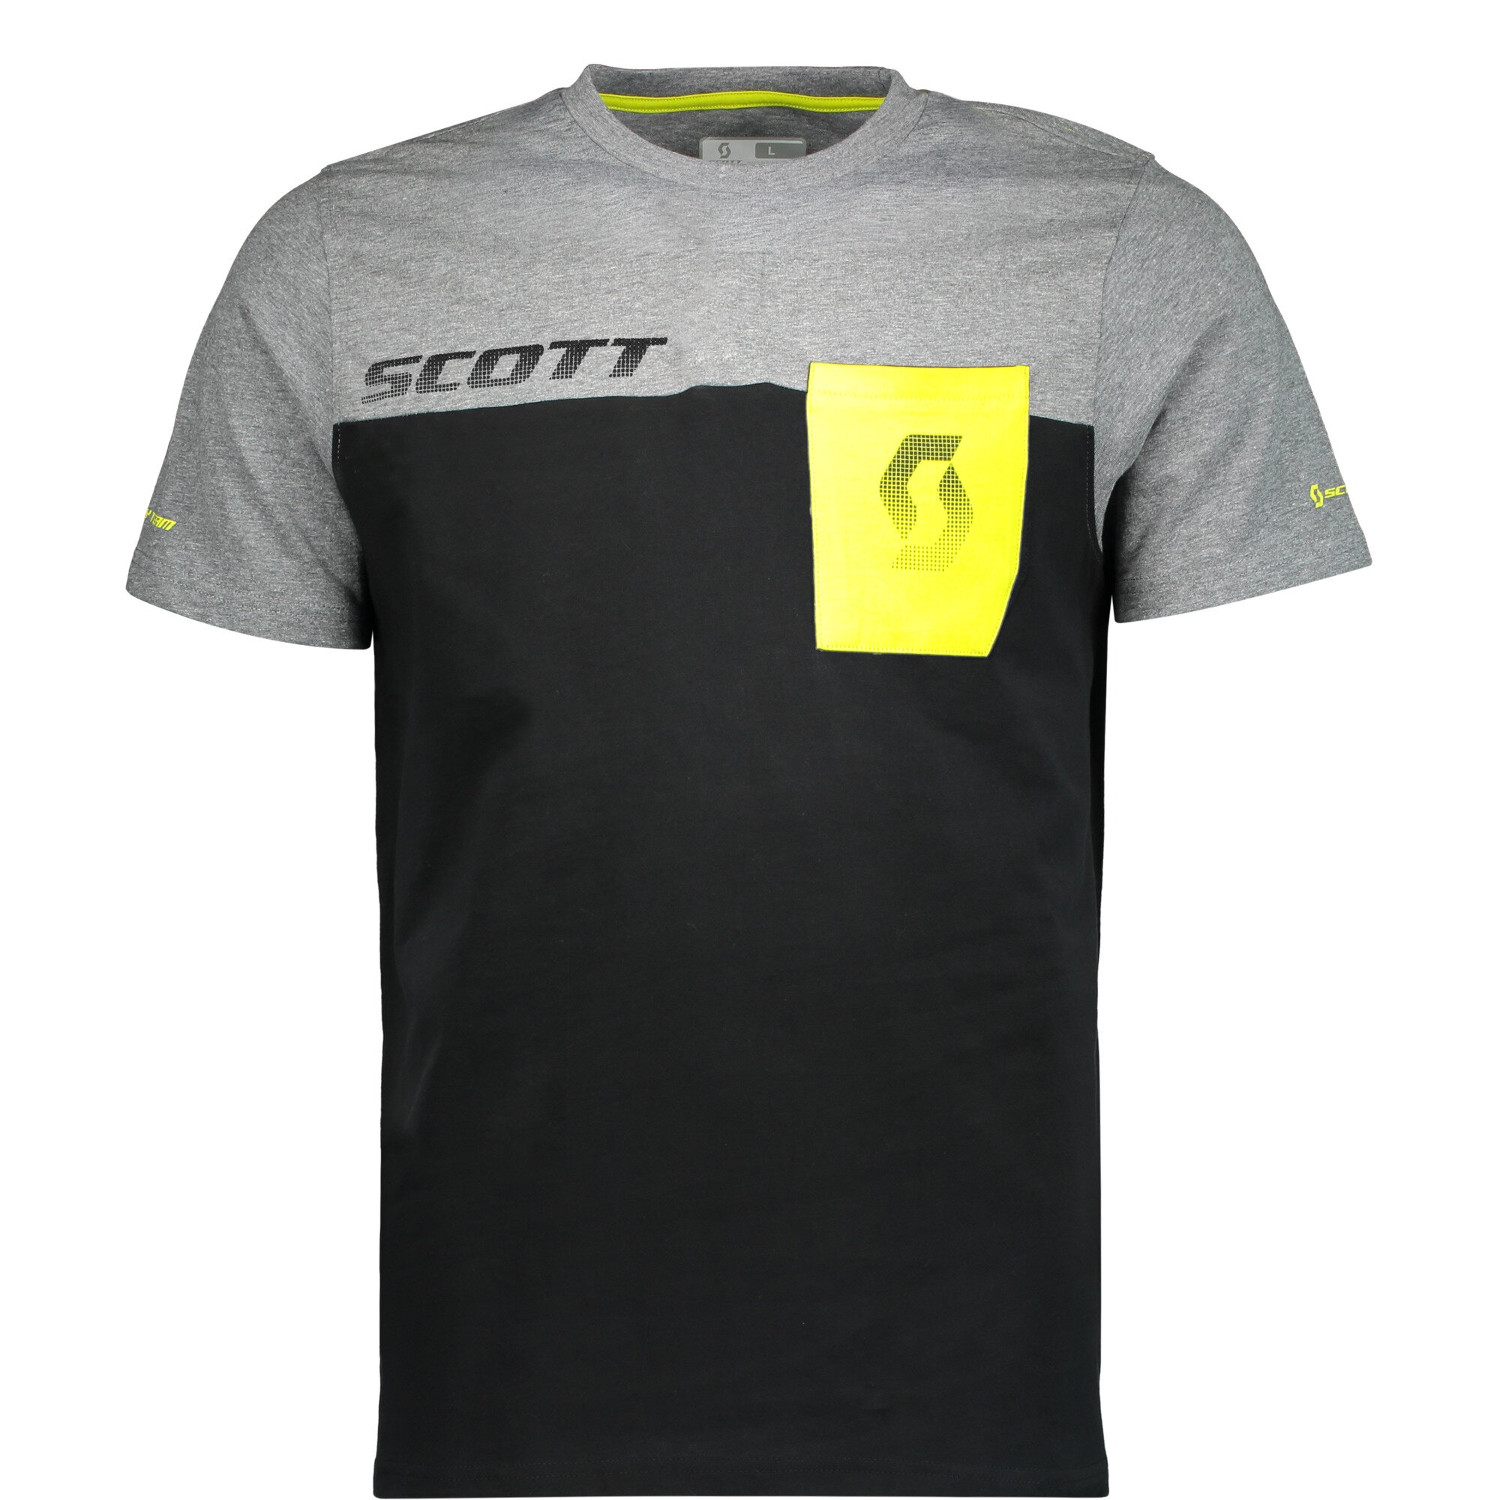 Scott T-Shirt Factory Team CO Nero/Grigio Scuro Melange